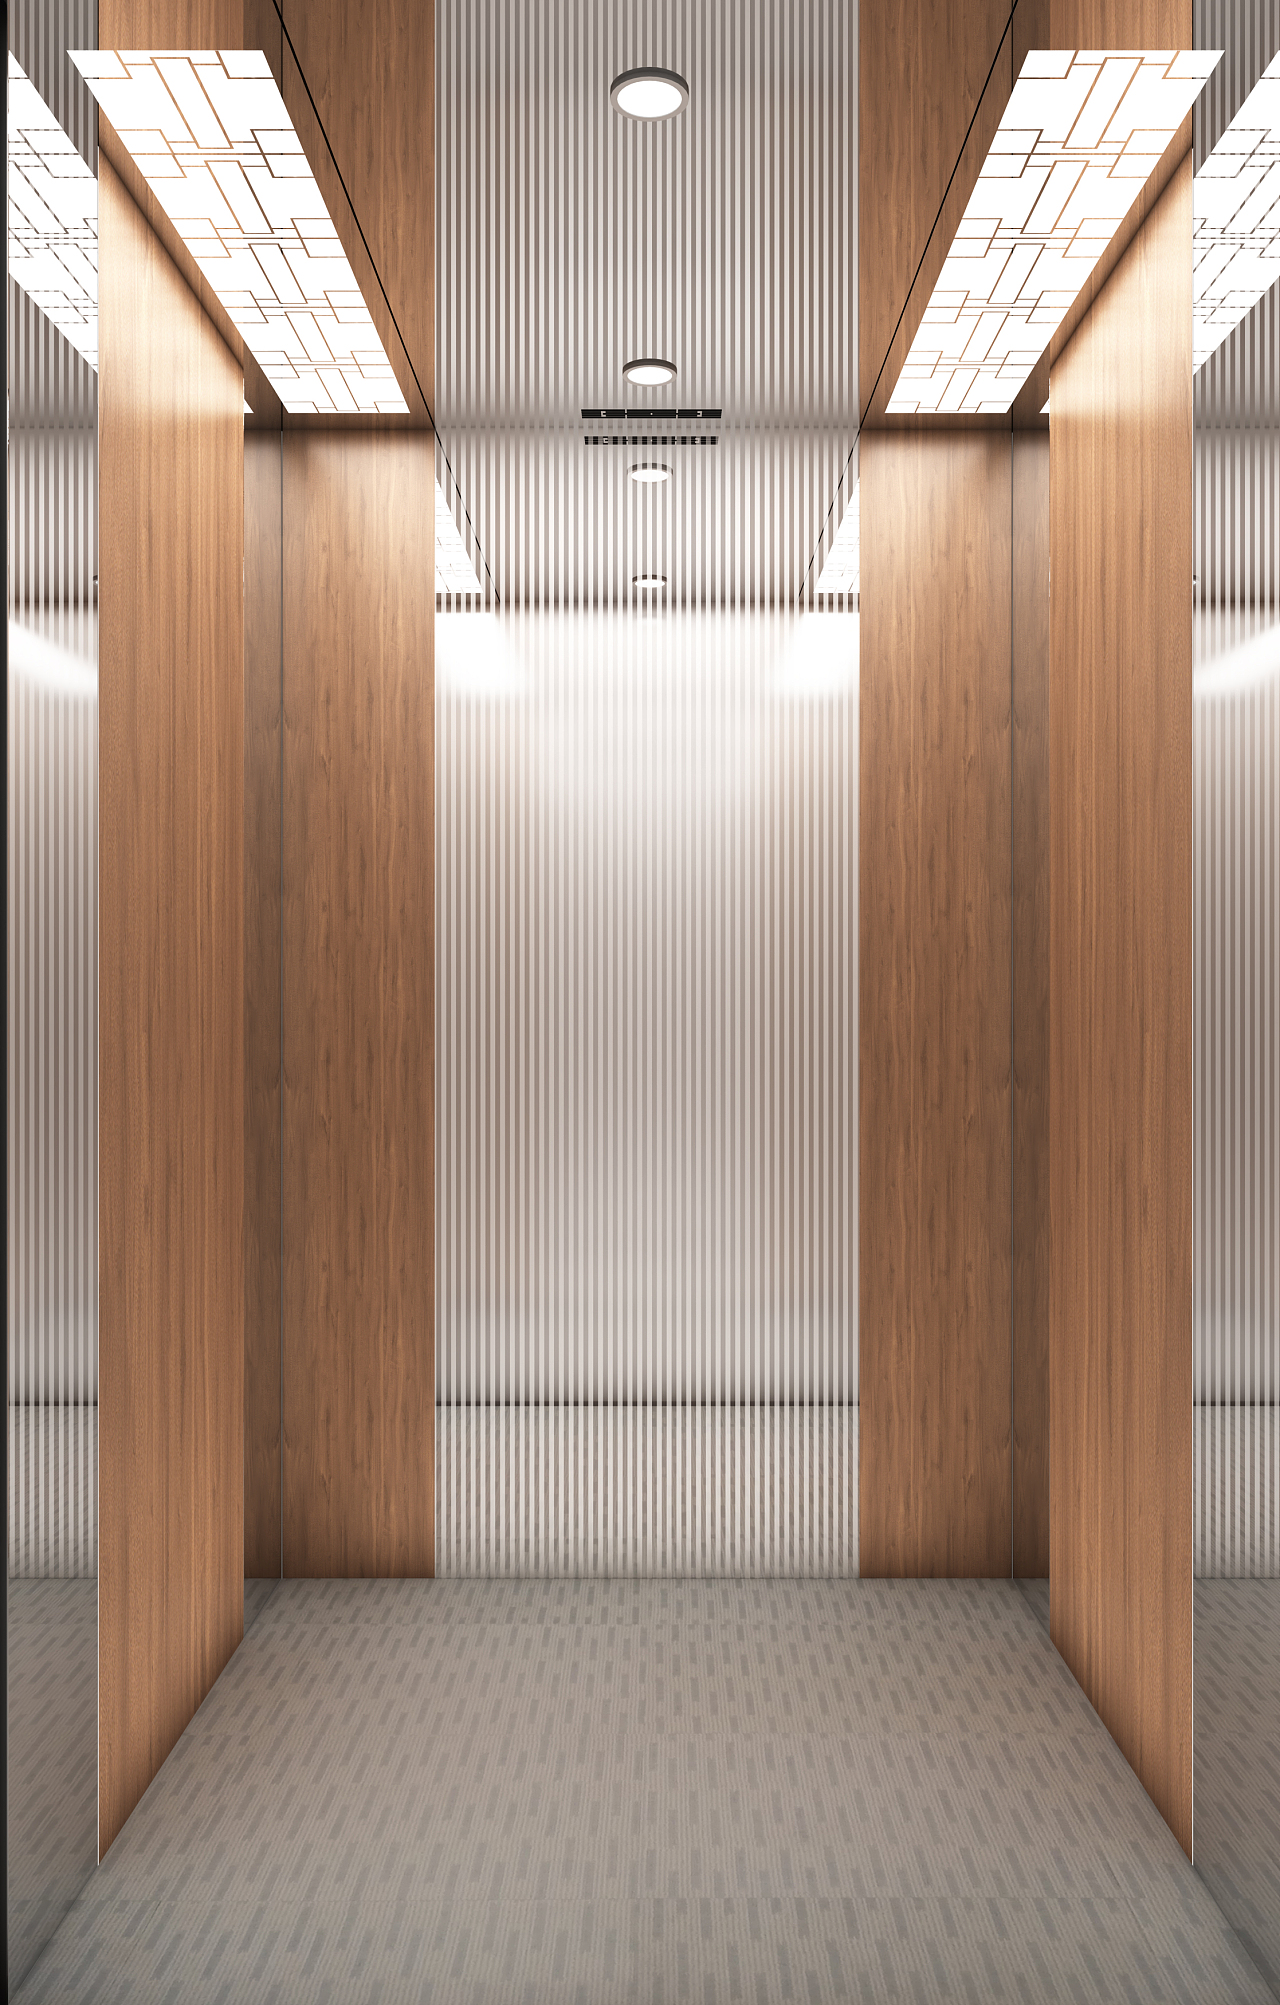 现代电梯厅轿厢3d模型下载101731110_3d现代电梯厅轿厢模型下载_3d现代电梯厅轿厢max模型免费下载_建E室内设计网